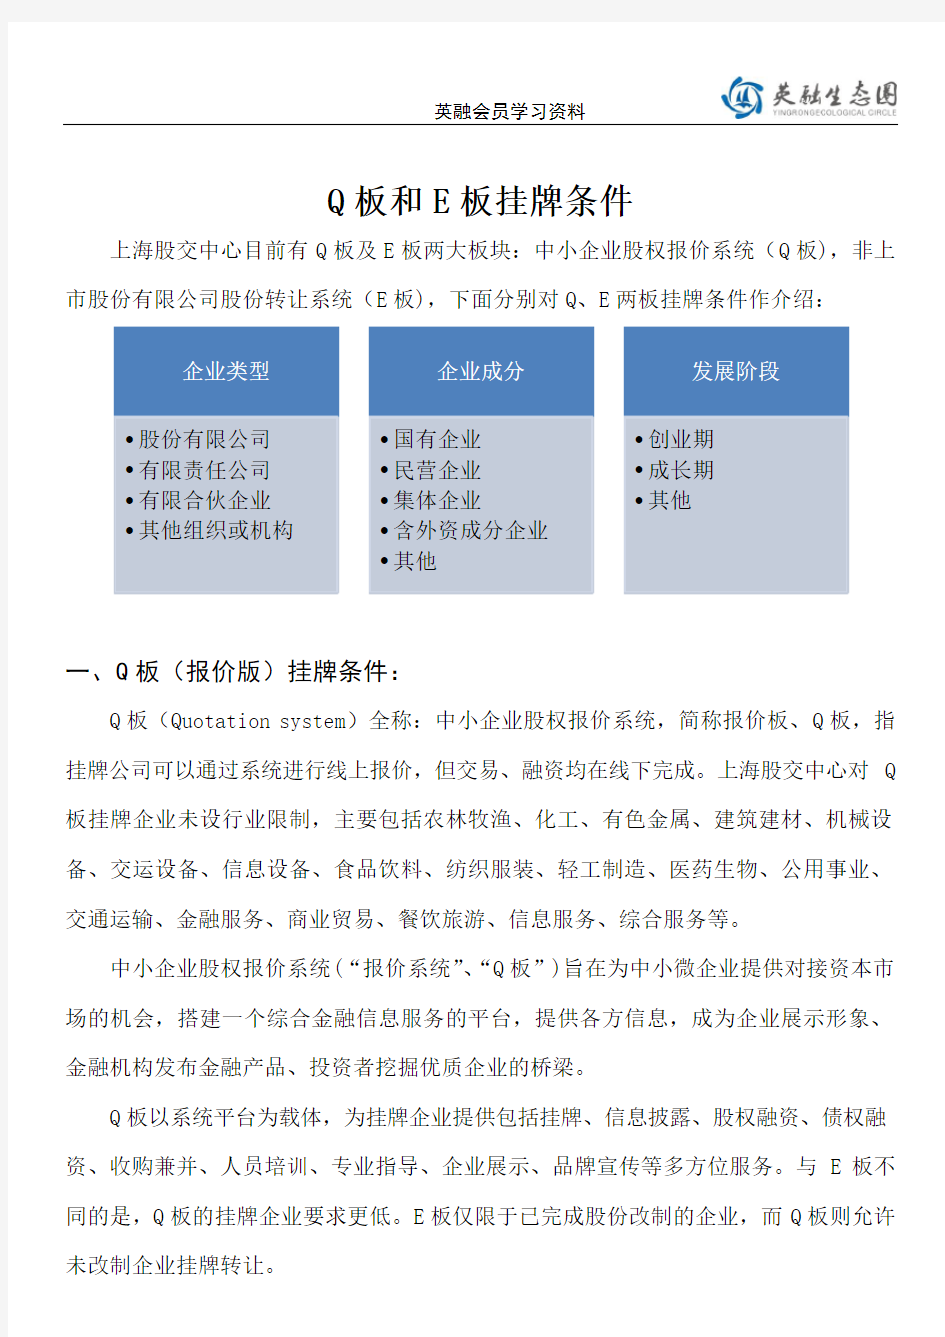 上海股权交易中心Q板和E板挂牌条件及对比